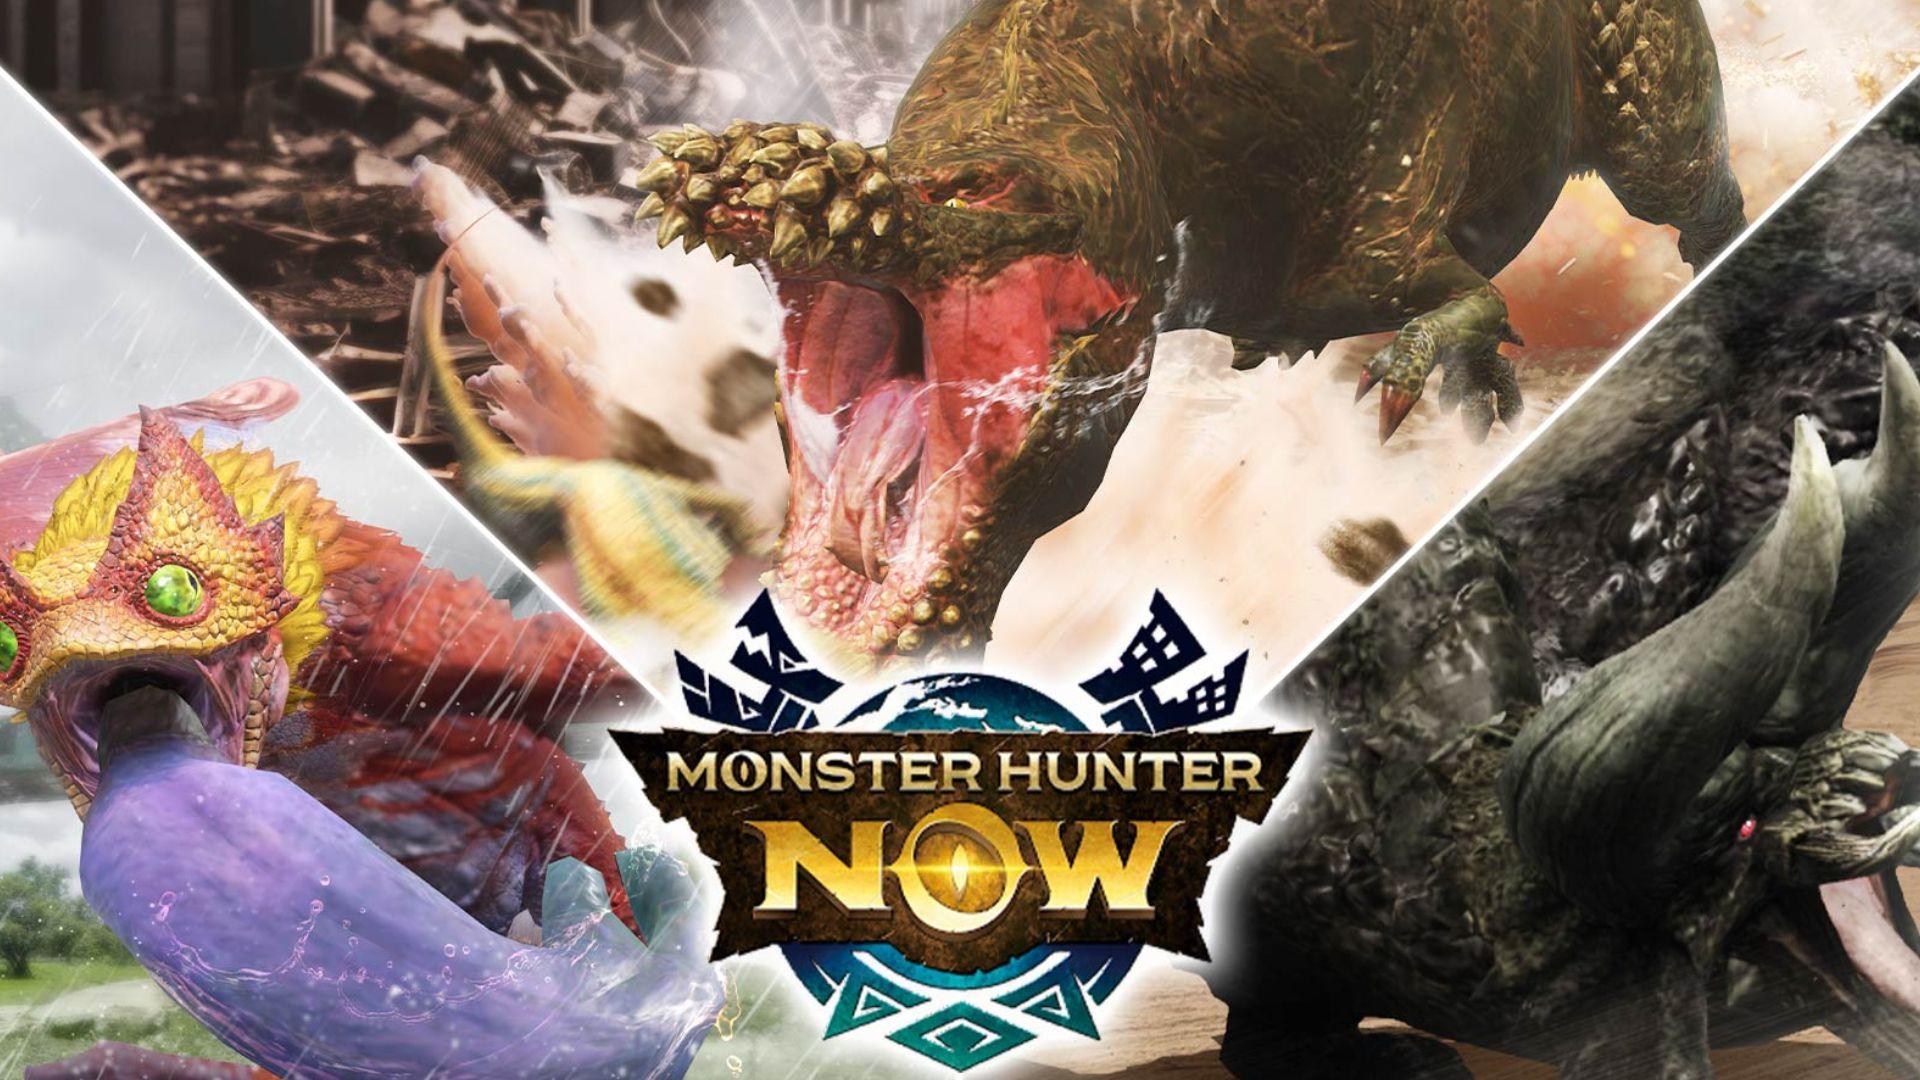 Примечания к обновлению Monster Hunter Now от 4 июня: изменения в приглашении друзей и групповой охоте